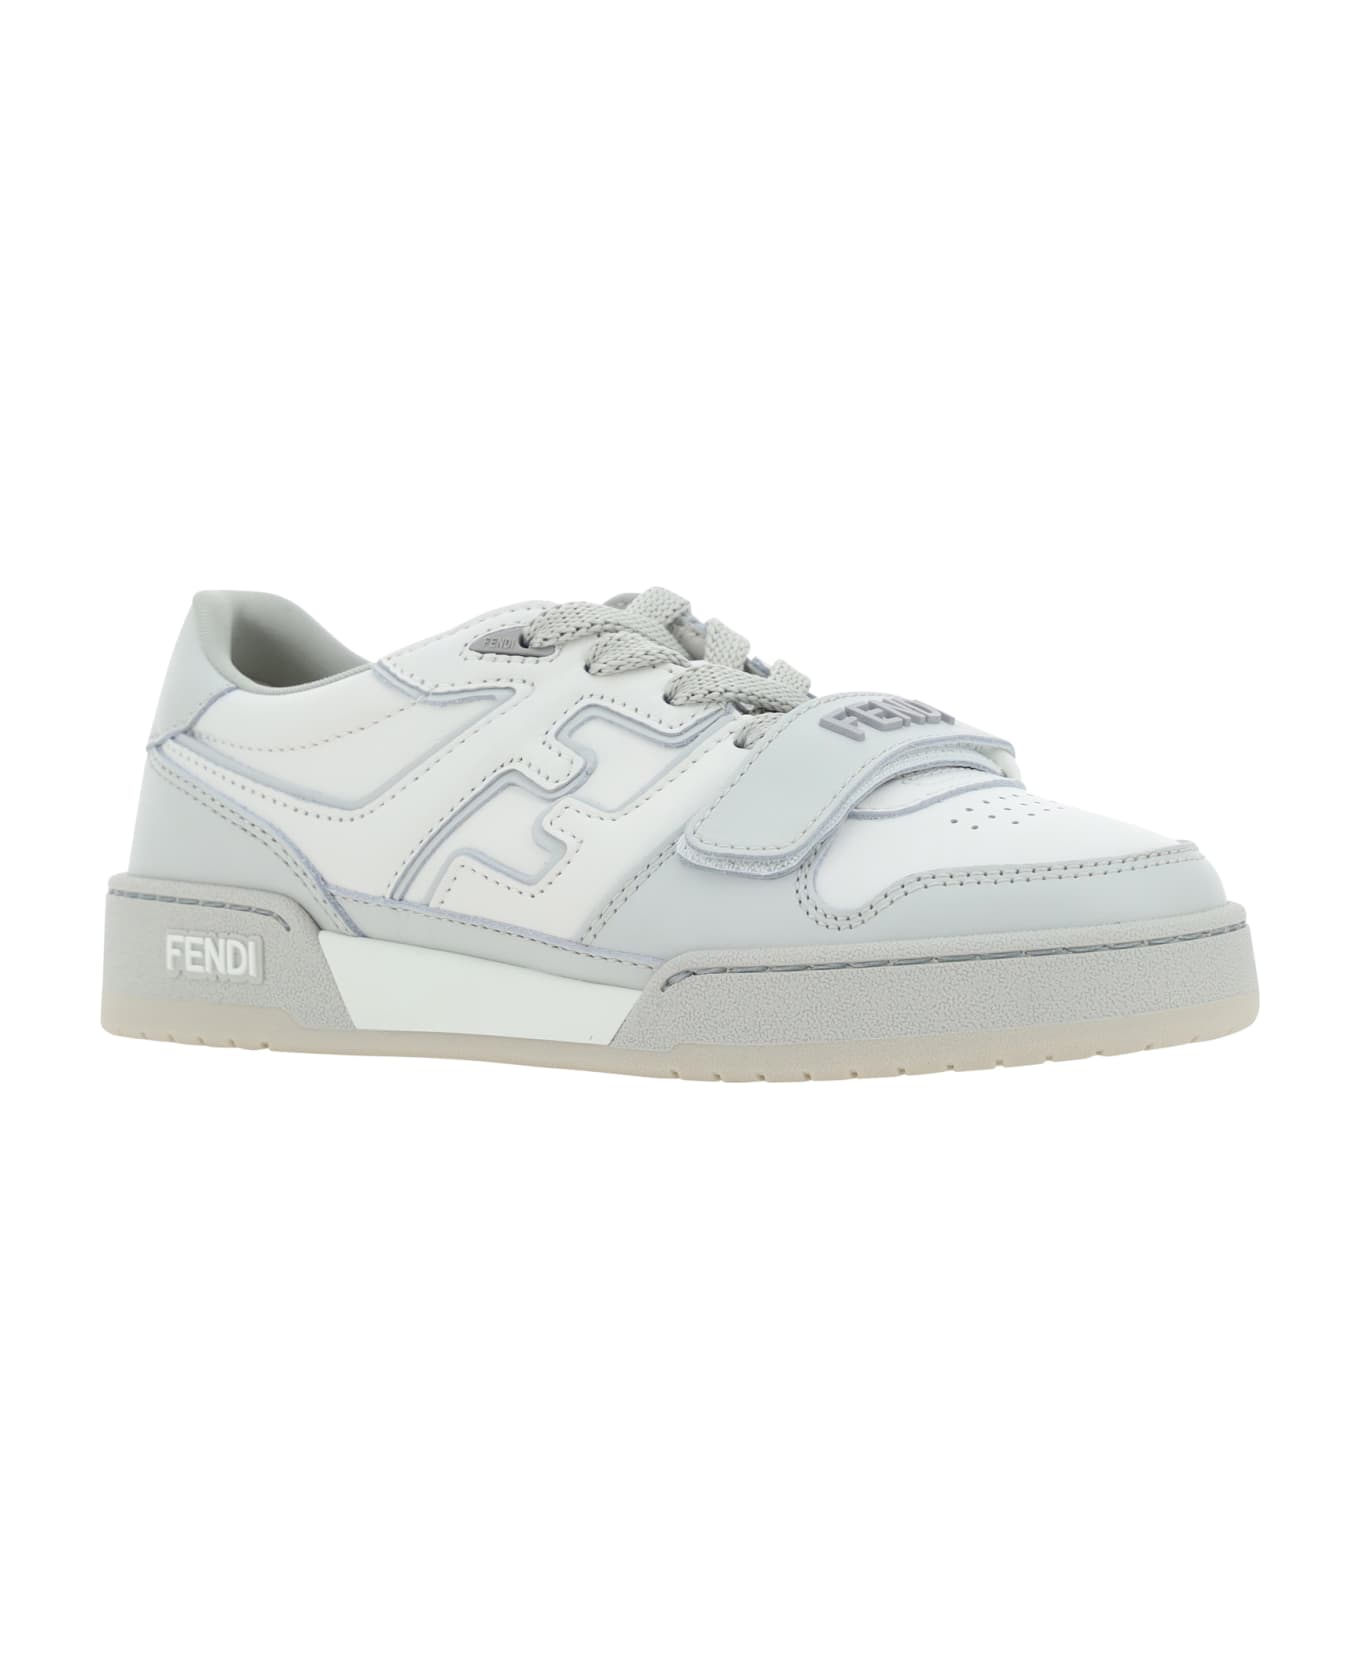 Fendi Match Sneakers - Grigio/white/grigio